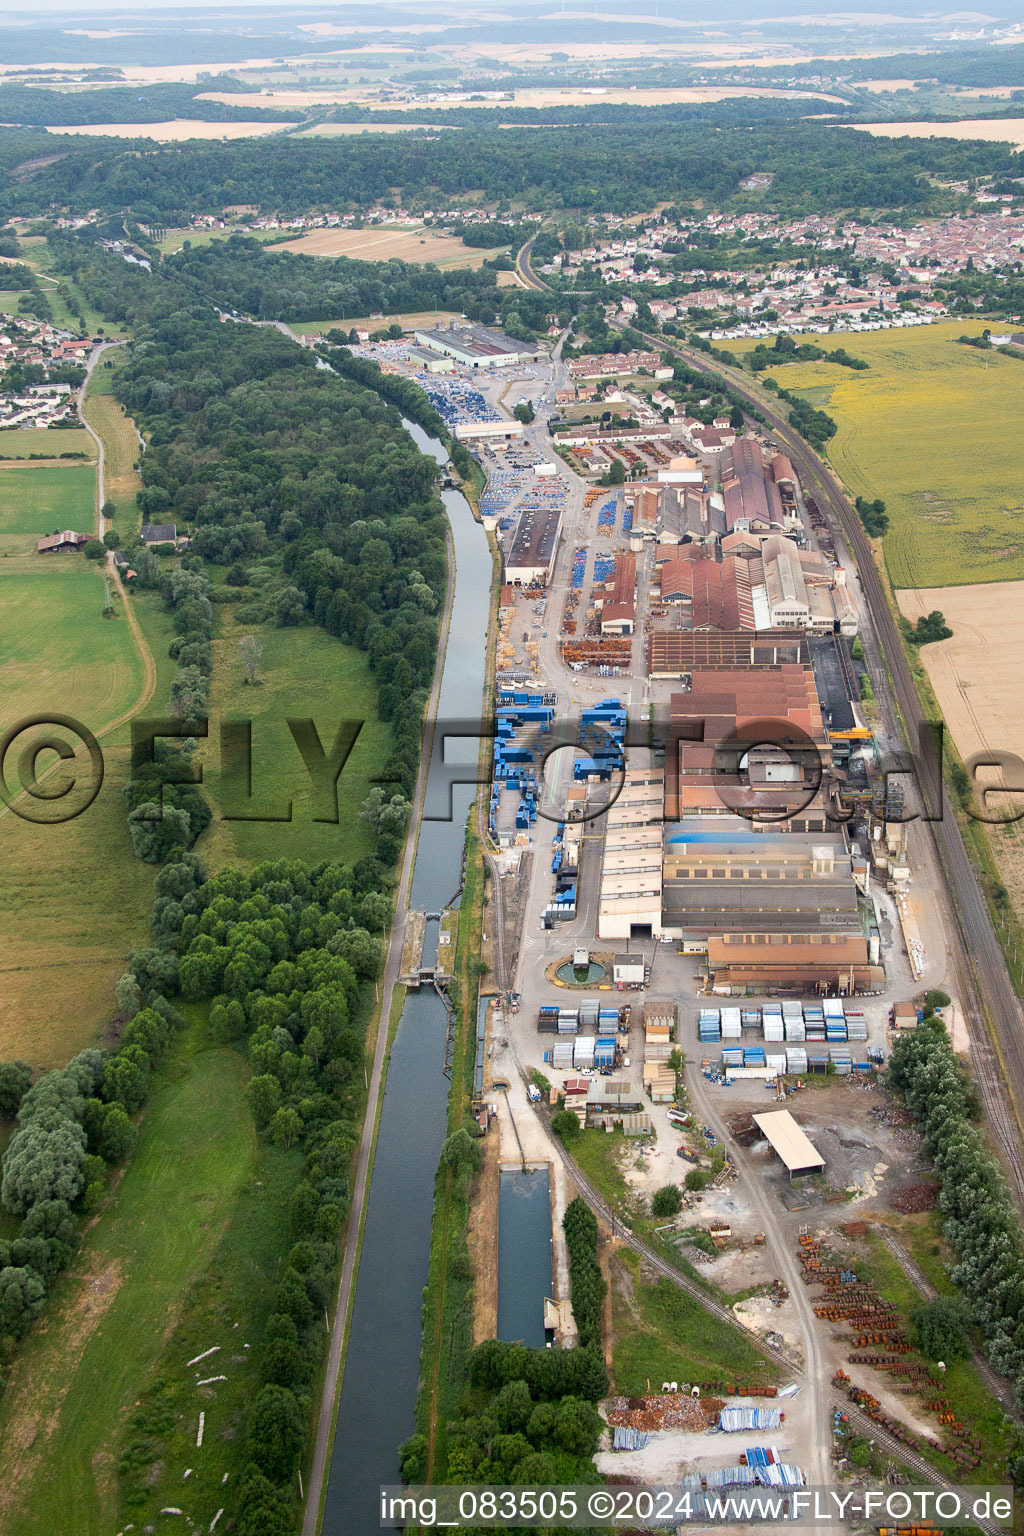 Vue aérienne de Site de la fonderie Saint Gobain PAM sur le Canal de la Marne au Rhin à Foug dans le département Meurthe et Moselle, France